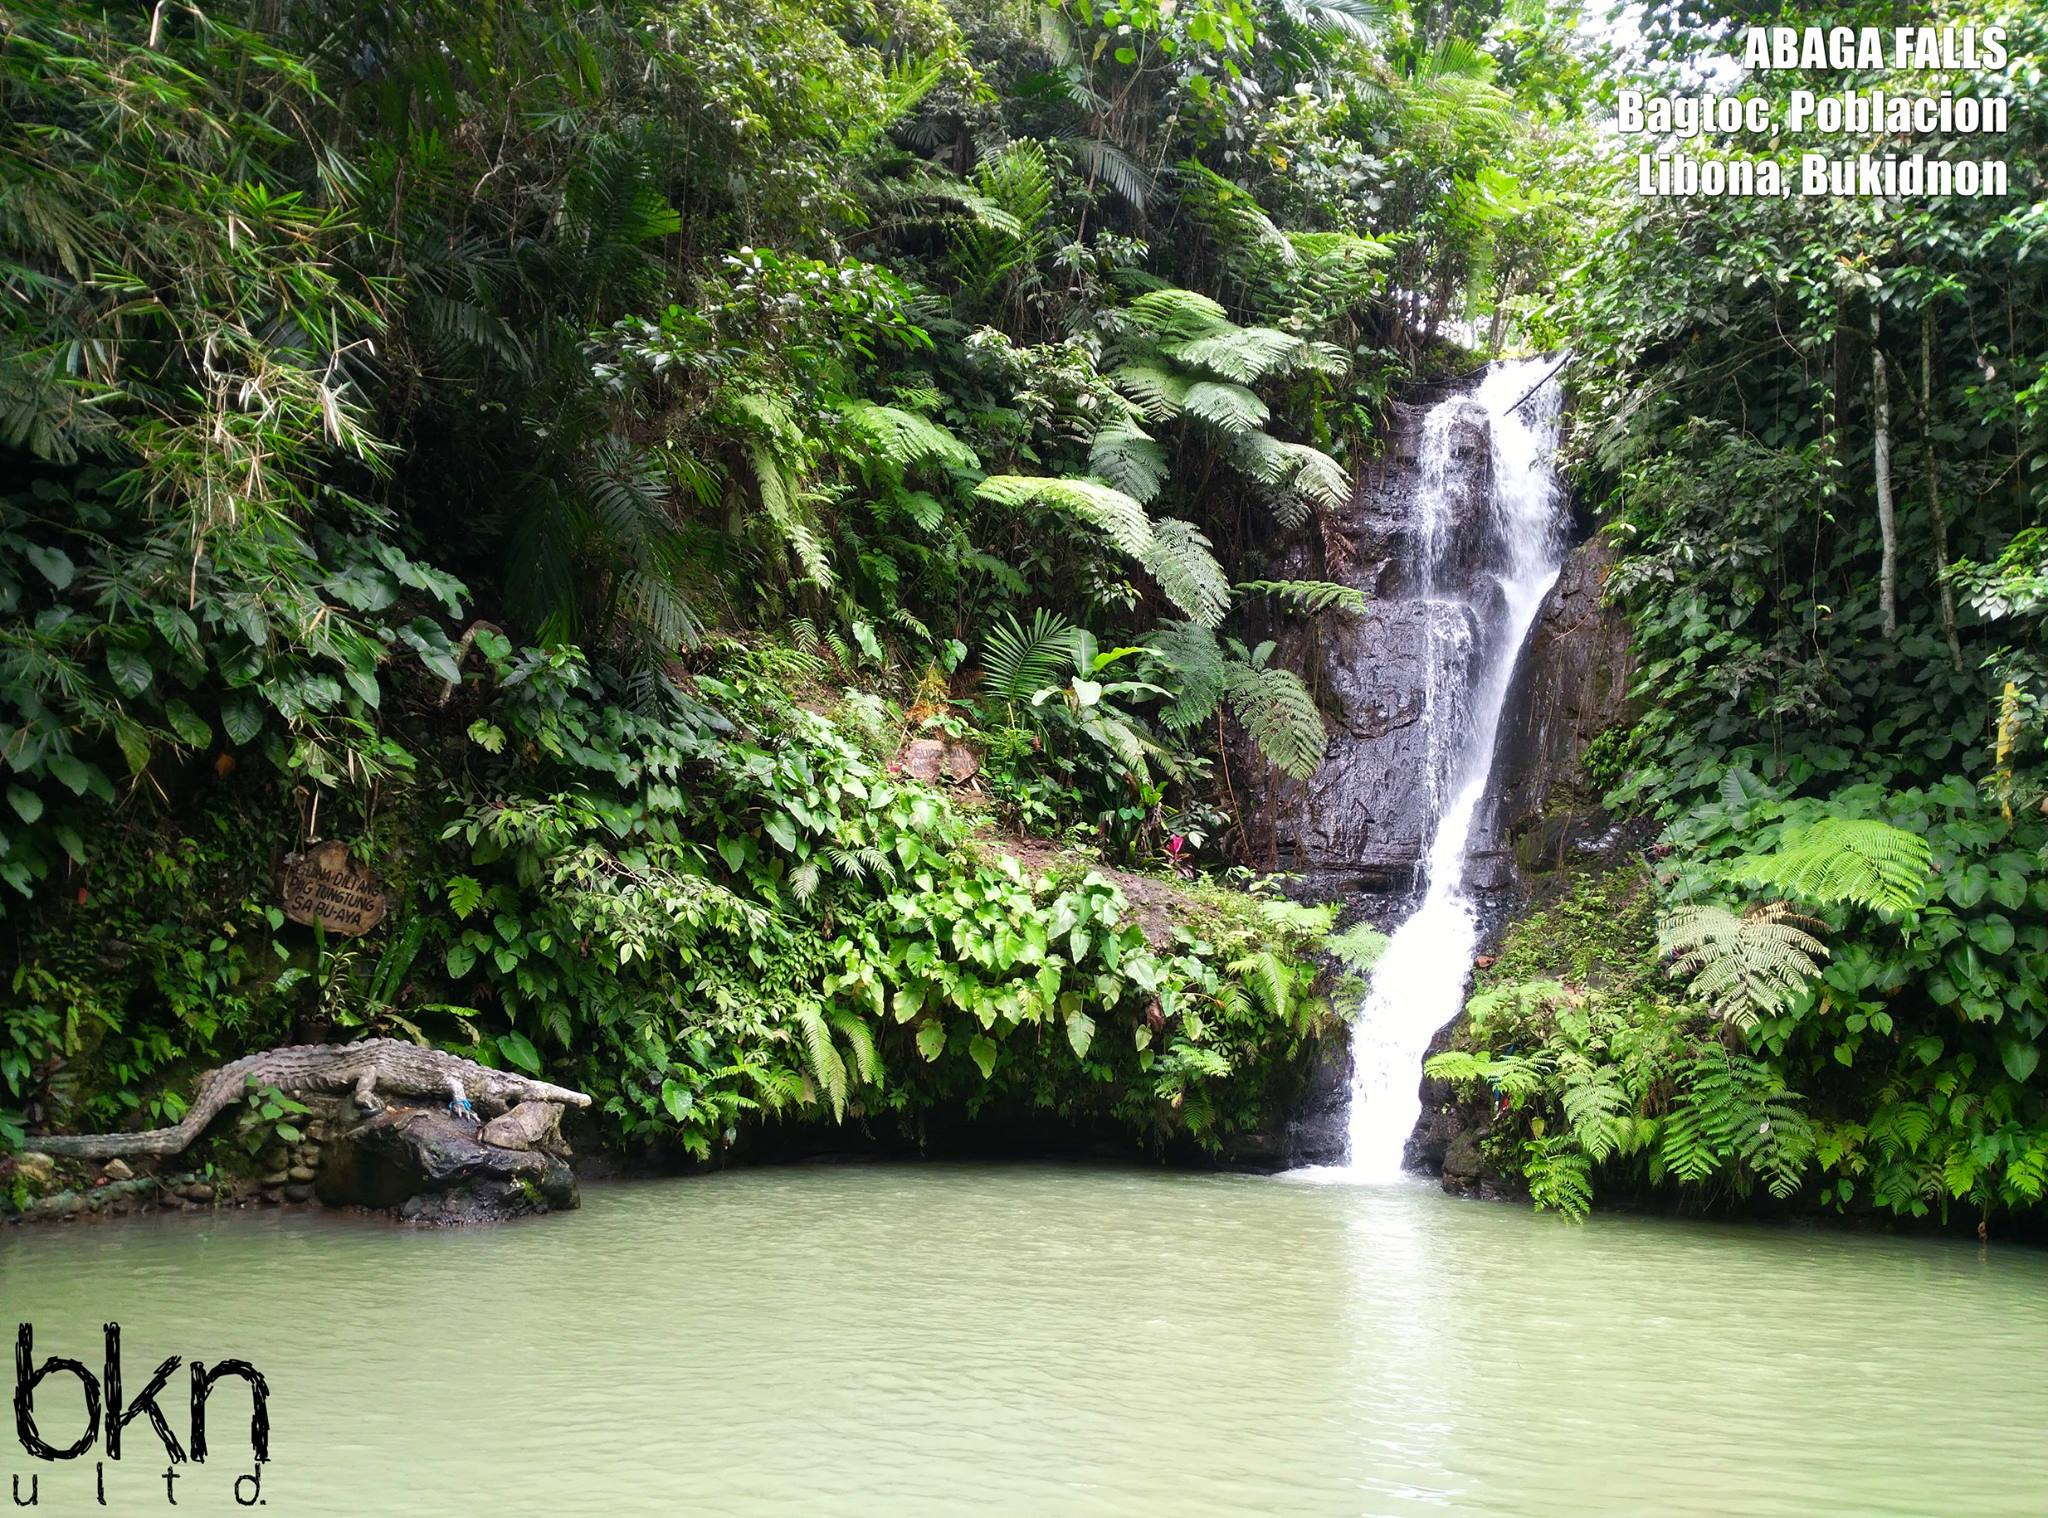 Abaga Falls